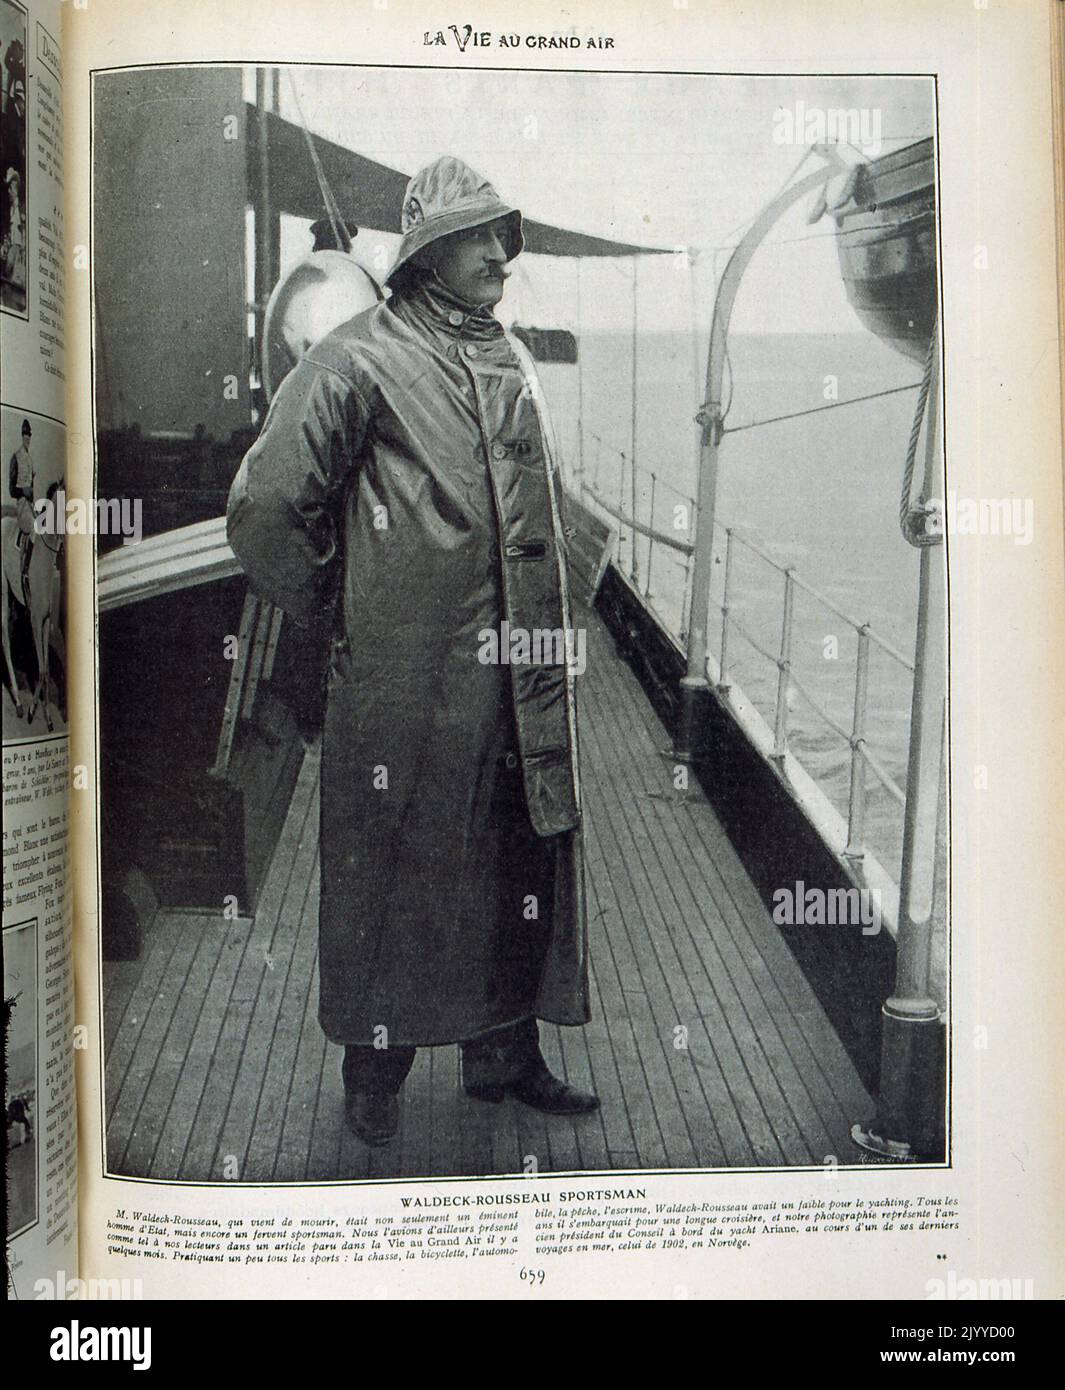 De la revista La Vie au Grand Air (La vida al aire libre); fotografía en blanco y negro de Pierre Waldeck-Rousseau en un obituario que celebra su vida como deportista: Corredor, ciclista, automovilista, pescador y tirador. Esta foto es de él a bordo de su barco en Noruega en 1902. Foto de stock